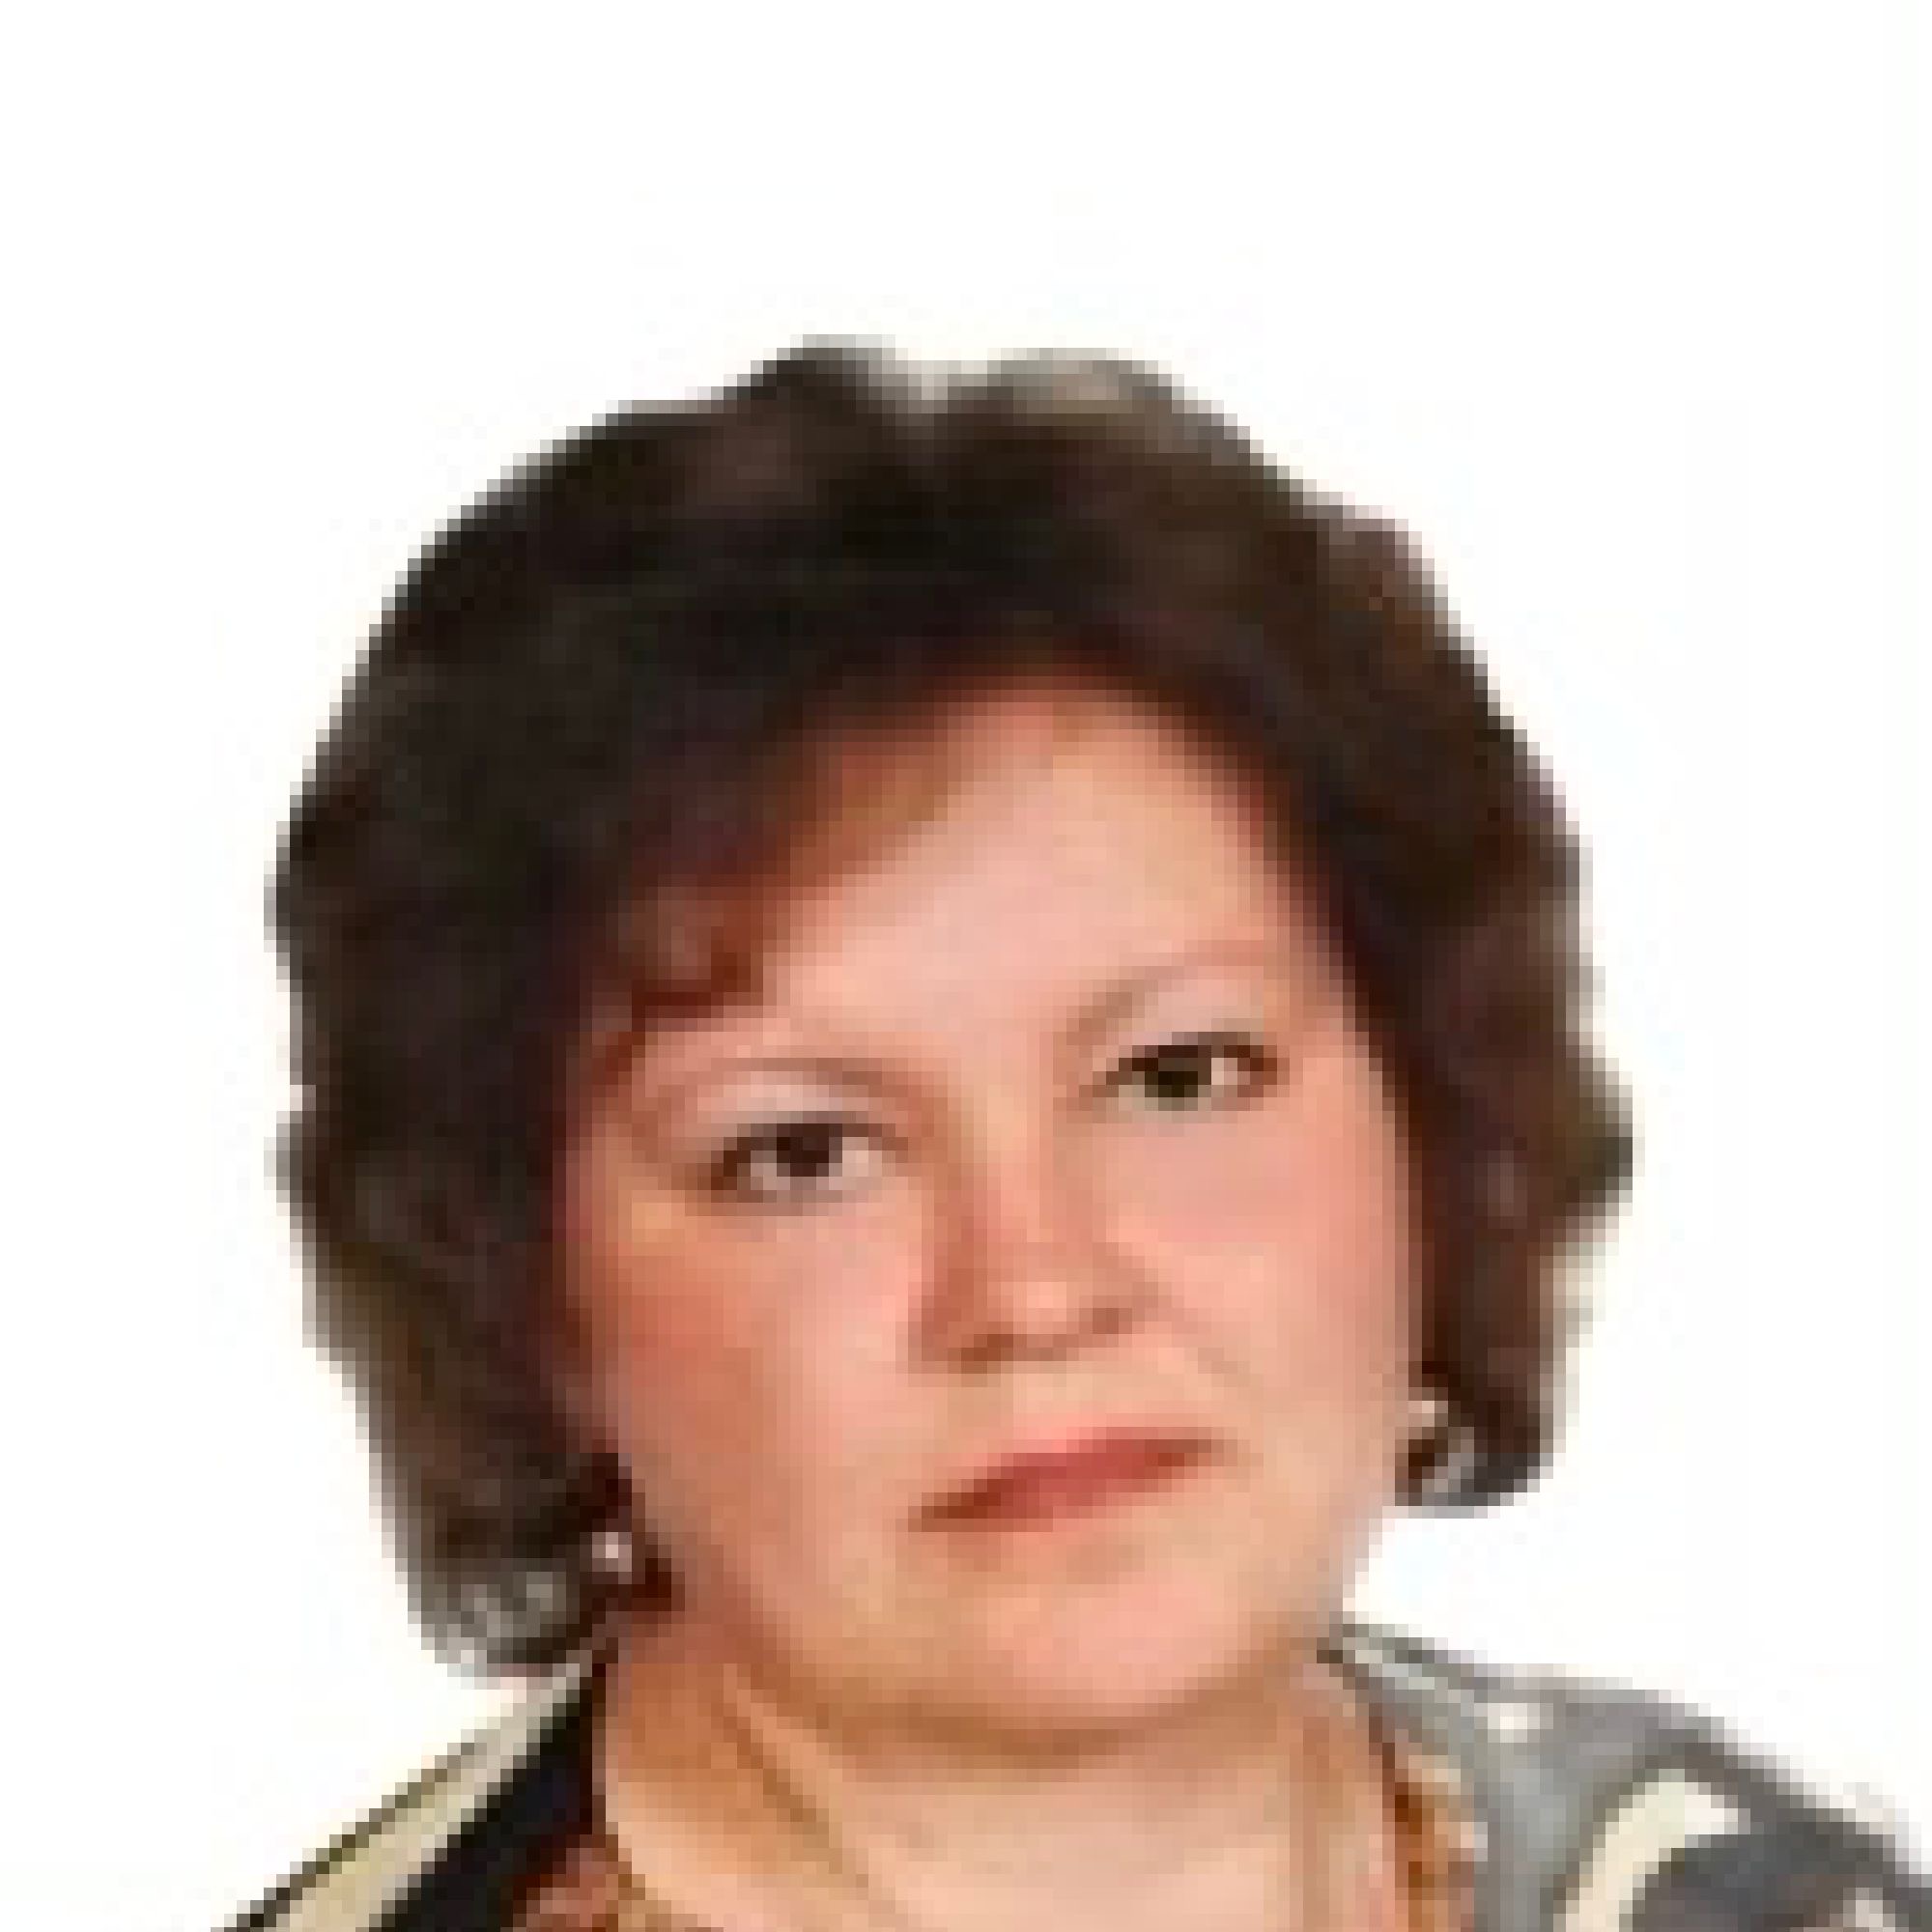 Максимова Ирина Леонидовна